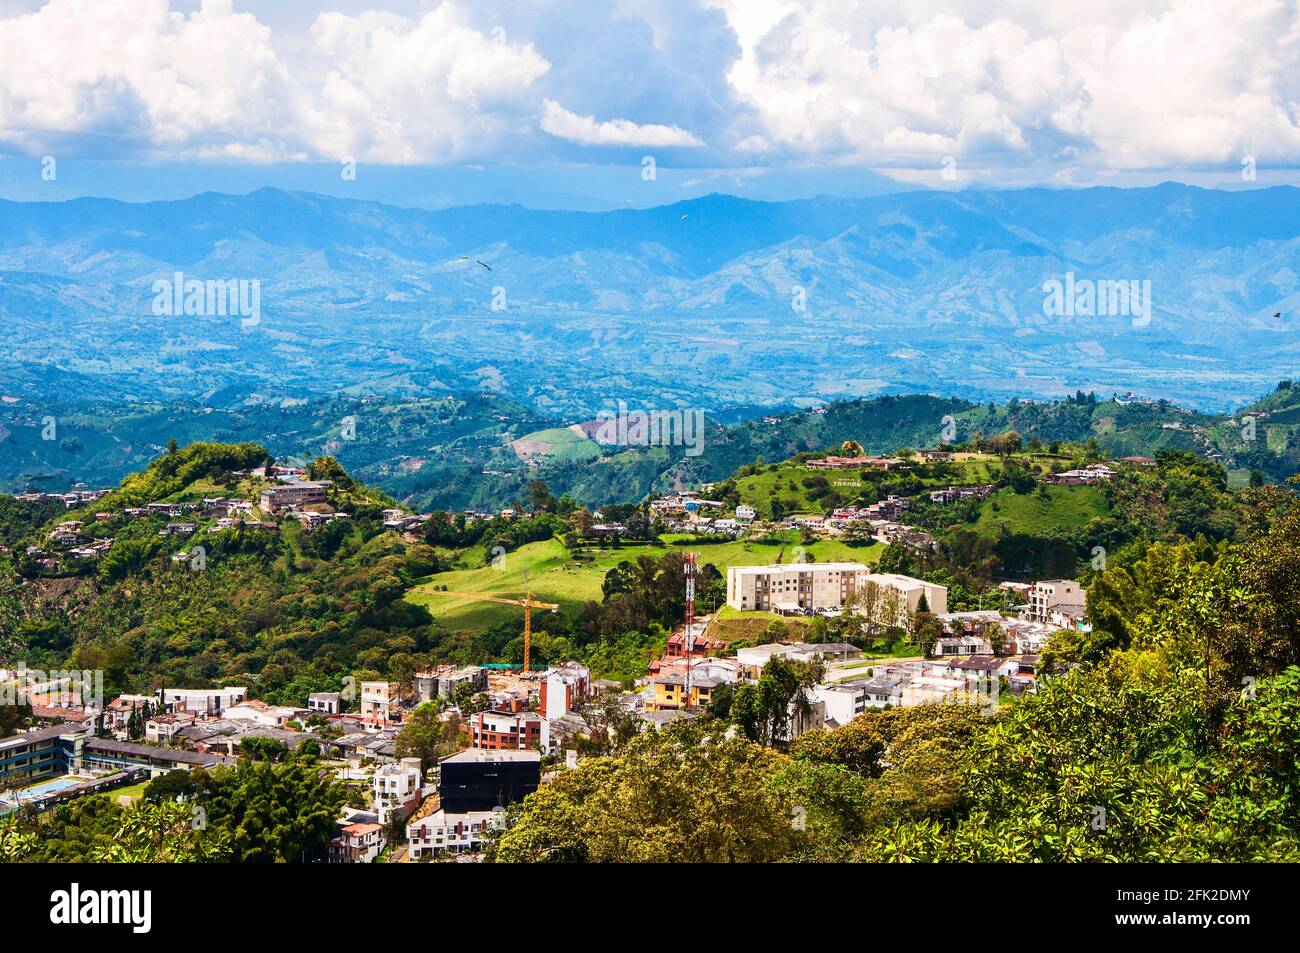 Vue sur la ville, ses maisons et ses montagnes. Manizales, Caldas, Colombie. Banque D'Images